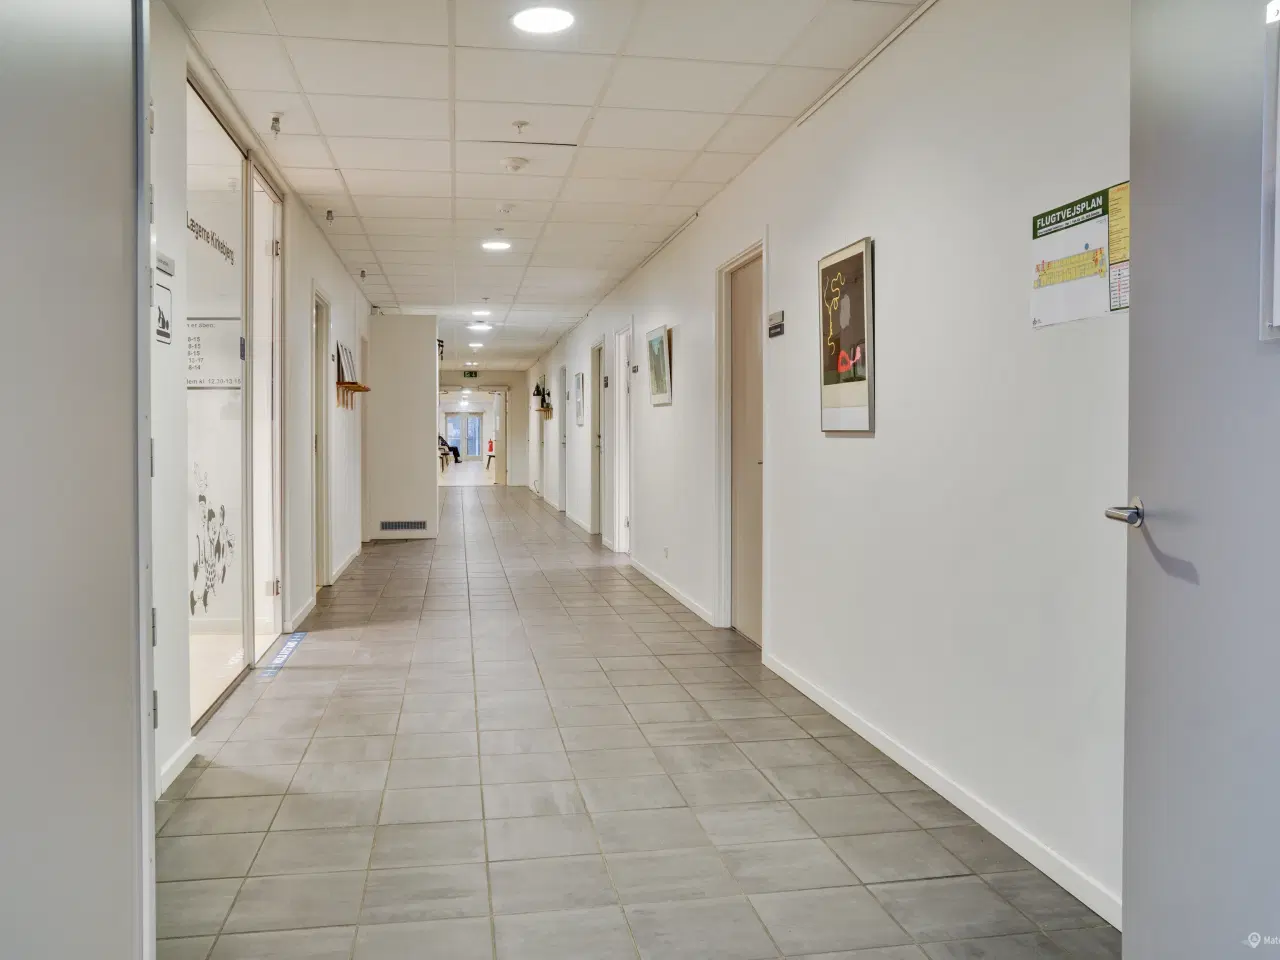 Billede 6 - Kliniklokaler/behandlerrum i moderne Sundhedshus Brøndby